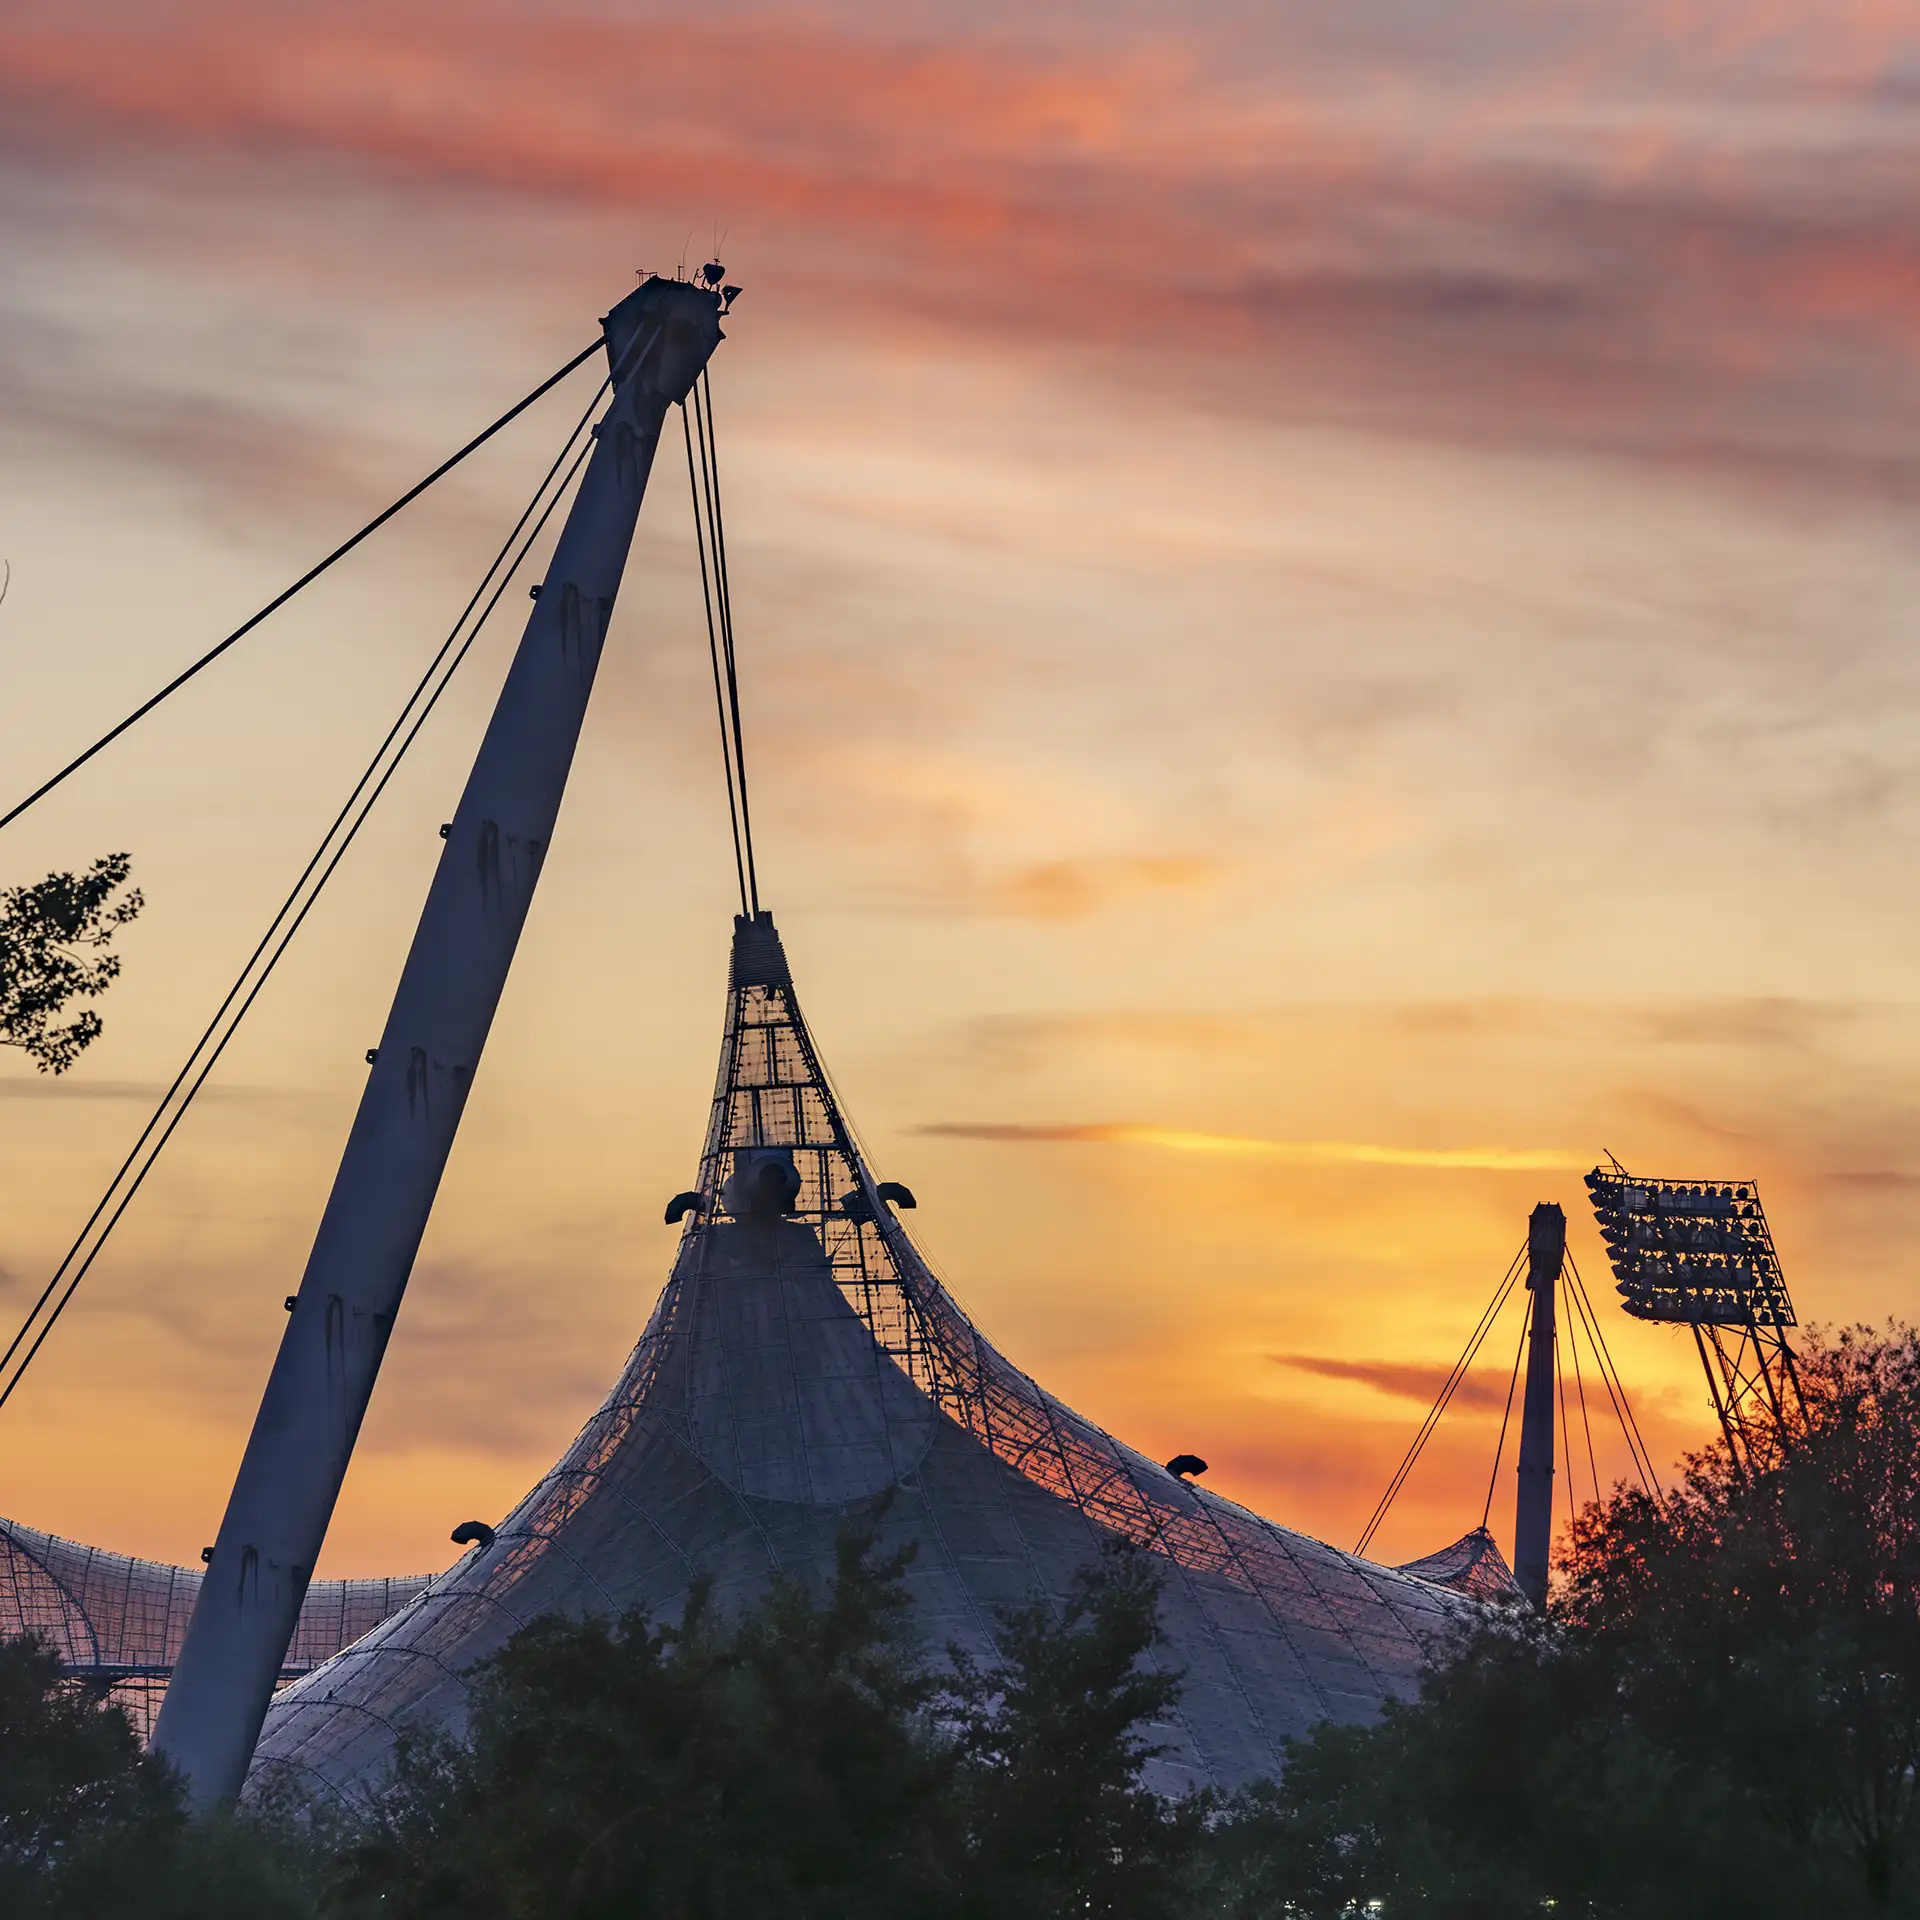 Farbfoto: Verdichteter Blick auf Teile des Münchner Olympiadaches, dramatisch gelbroter Himmel der untergehenden Sonne im Hintergrund